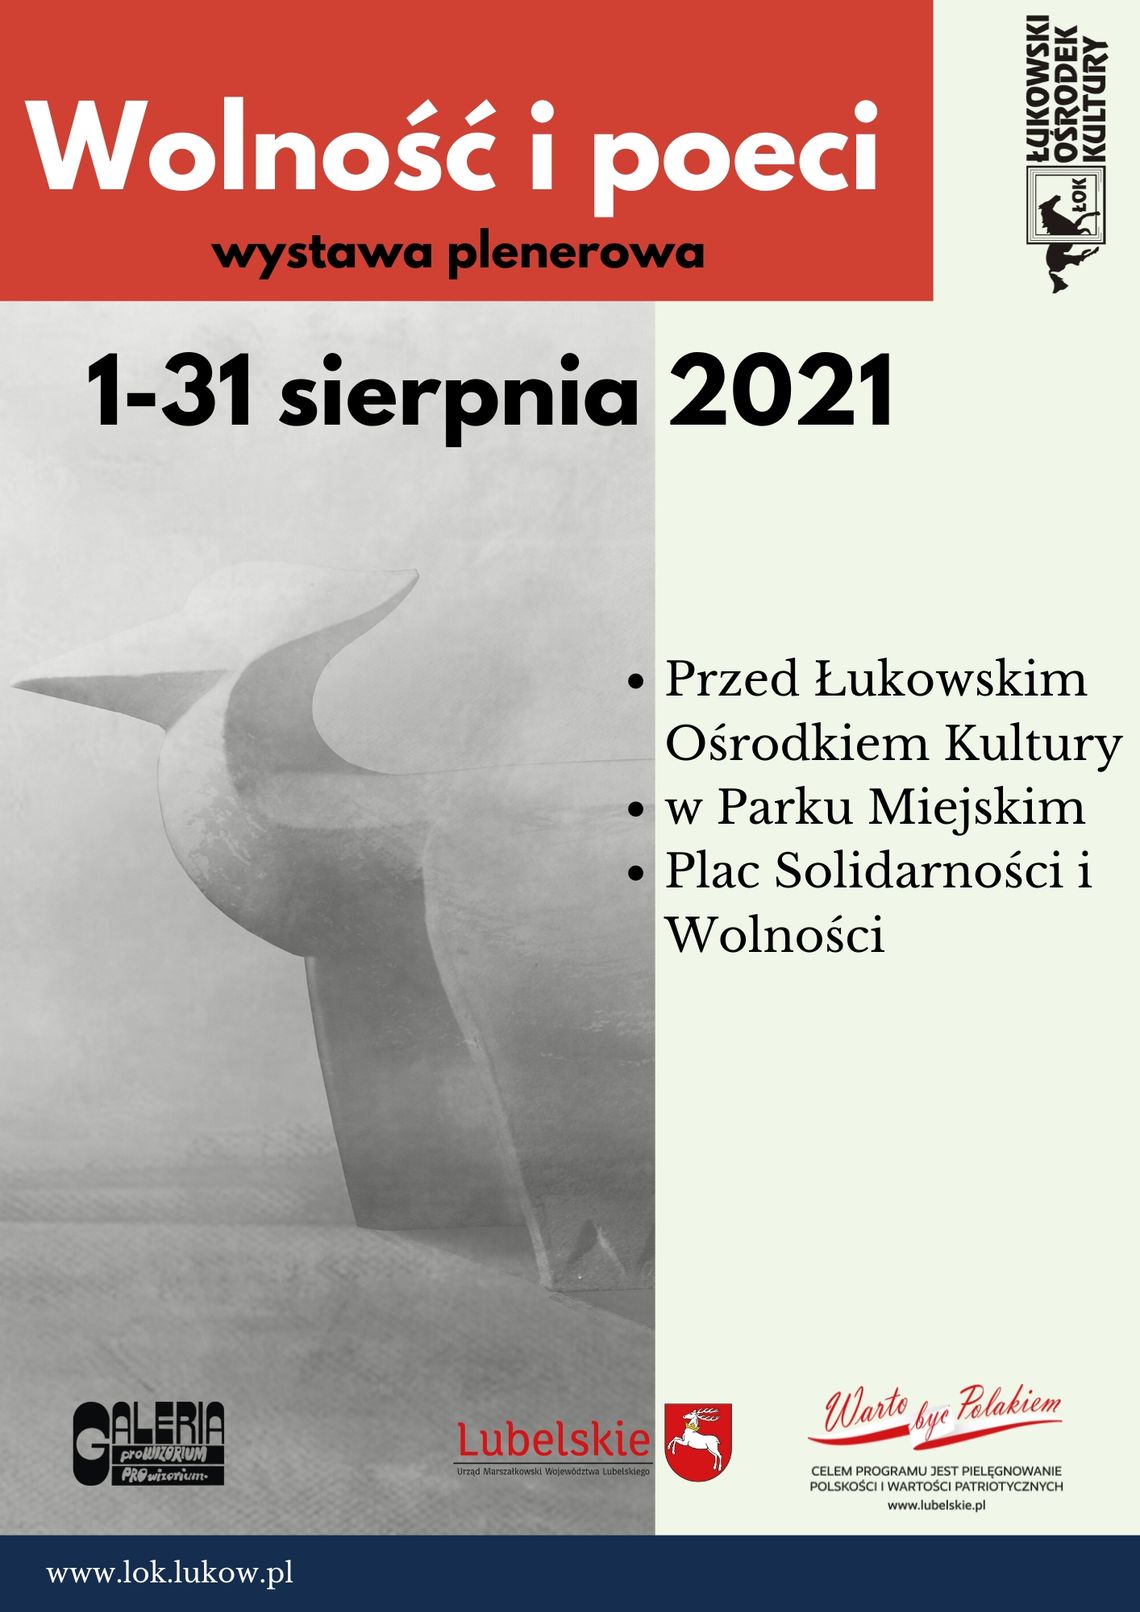 Wystawa plenerowa: Wolność i poeci /1-31 sierpnia 2021